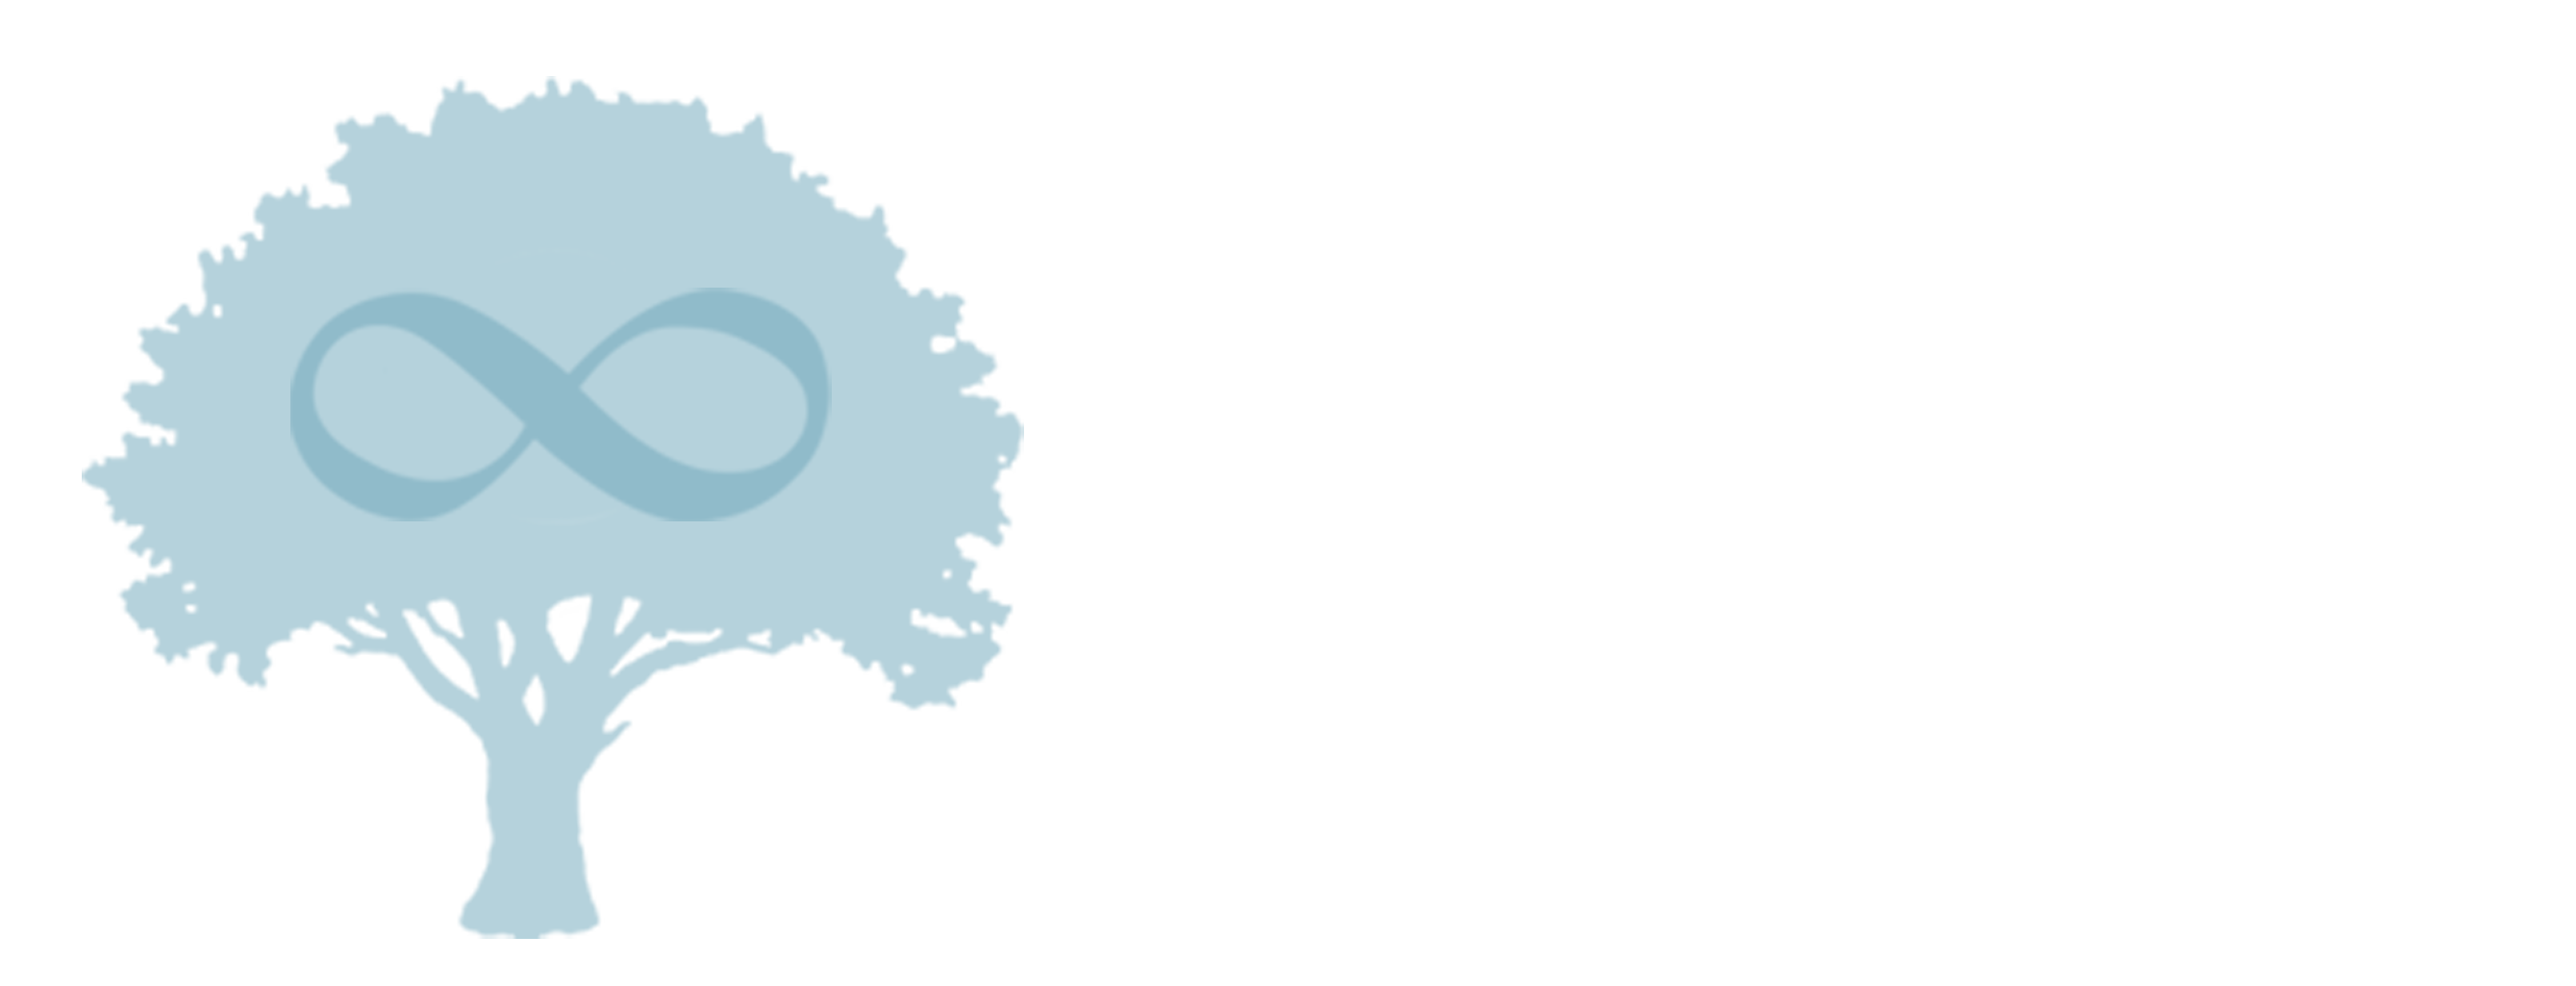 Company logo with tree and infinity symbol